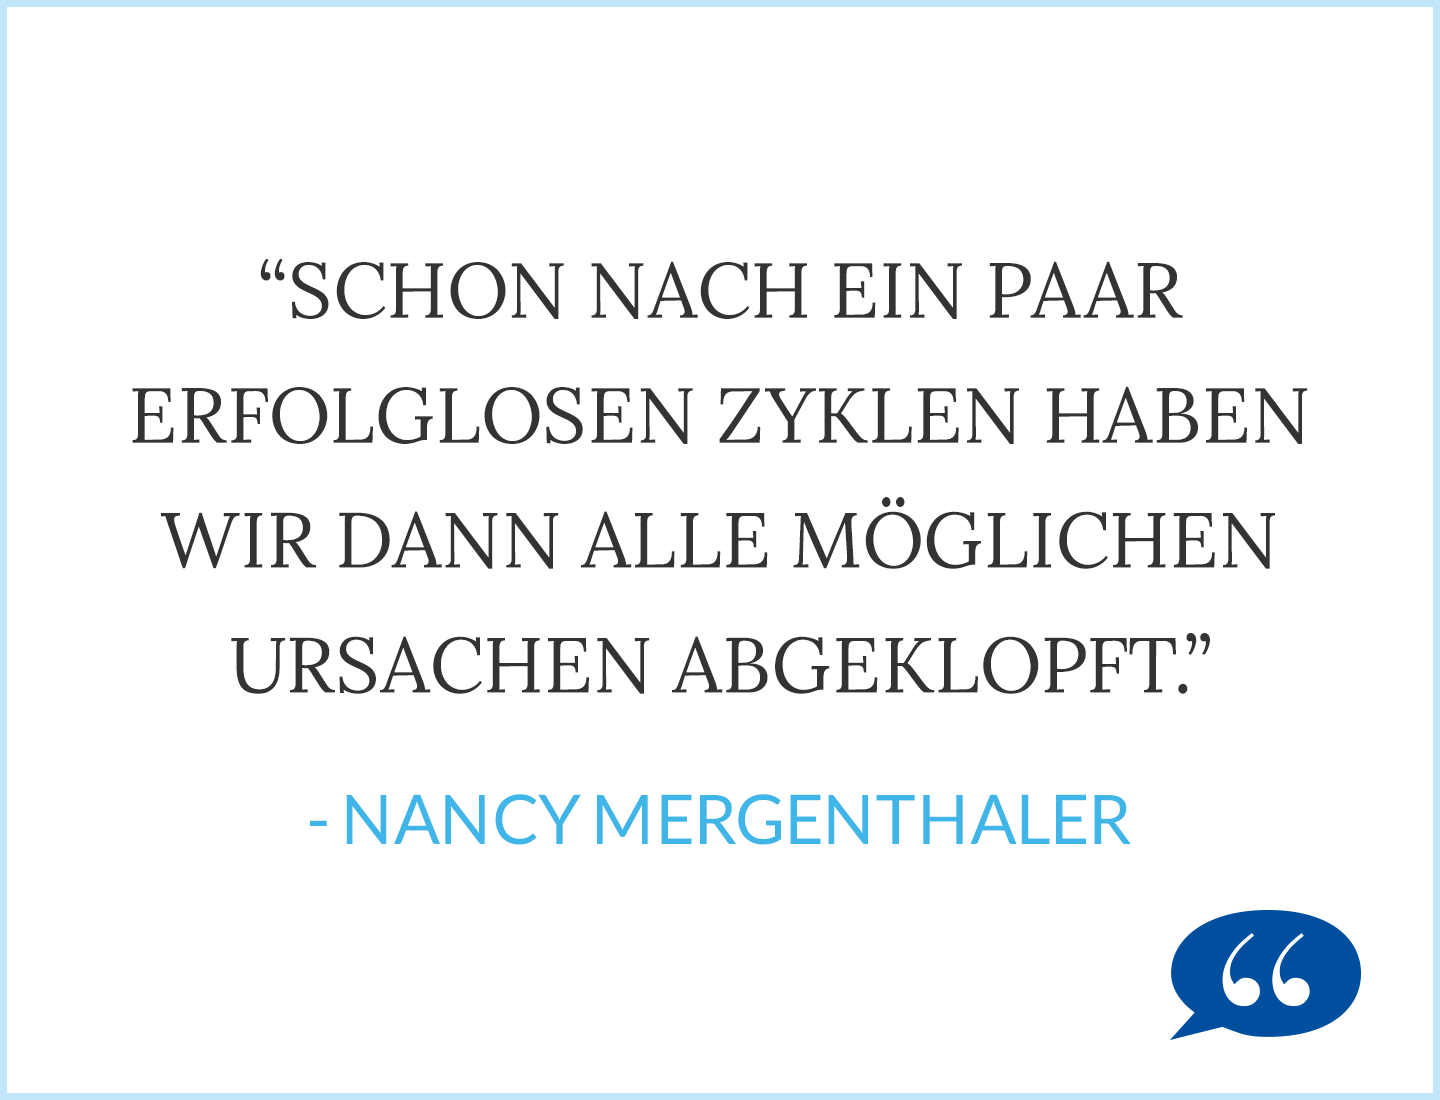 Zitat: Schon nach ein paar erfolglosen Zyklen haben wir dann alle möglichen Ursachen abgeklopft - Nancy Mergenthaler